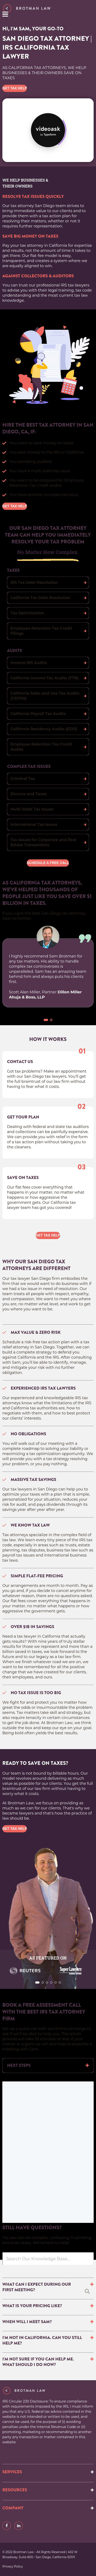 Brotman Law - San Diego CA Lawyers